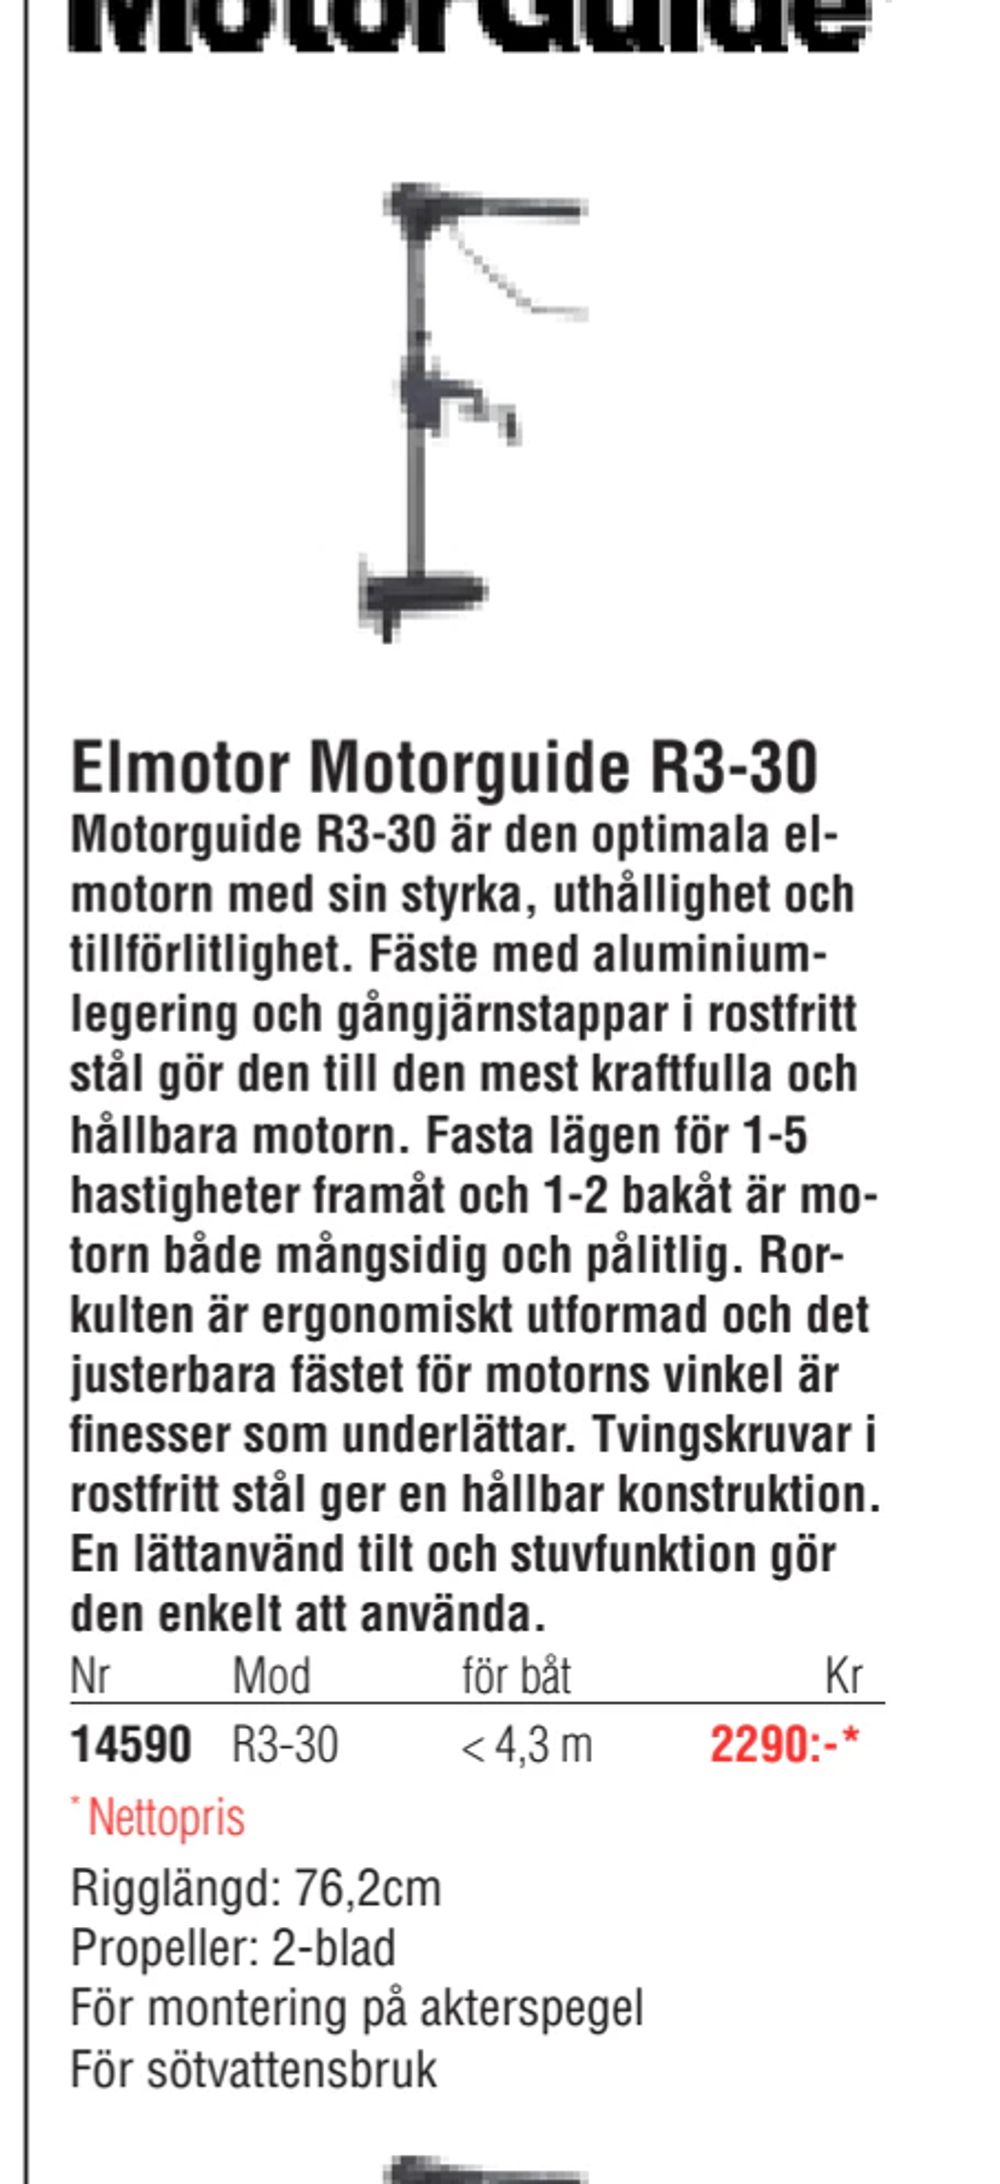 Erbjudanden på Elmotor Motorguide R3-30 från Erlandsons Brygga för 2 290 kr